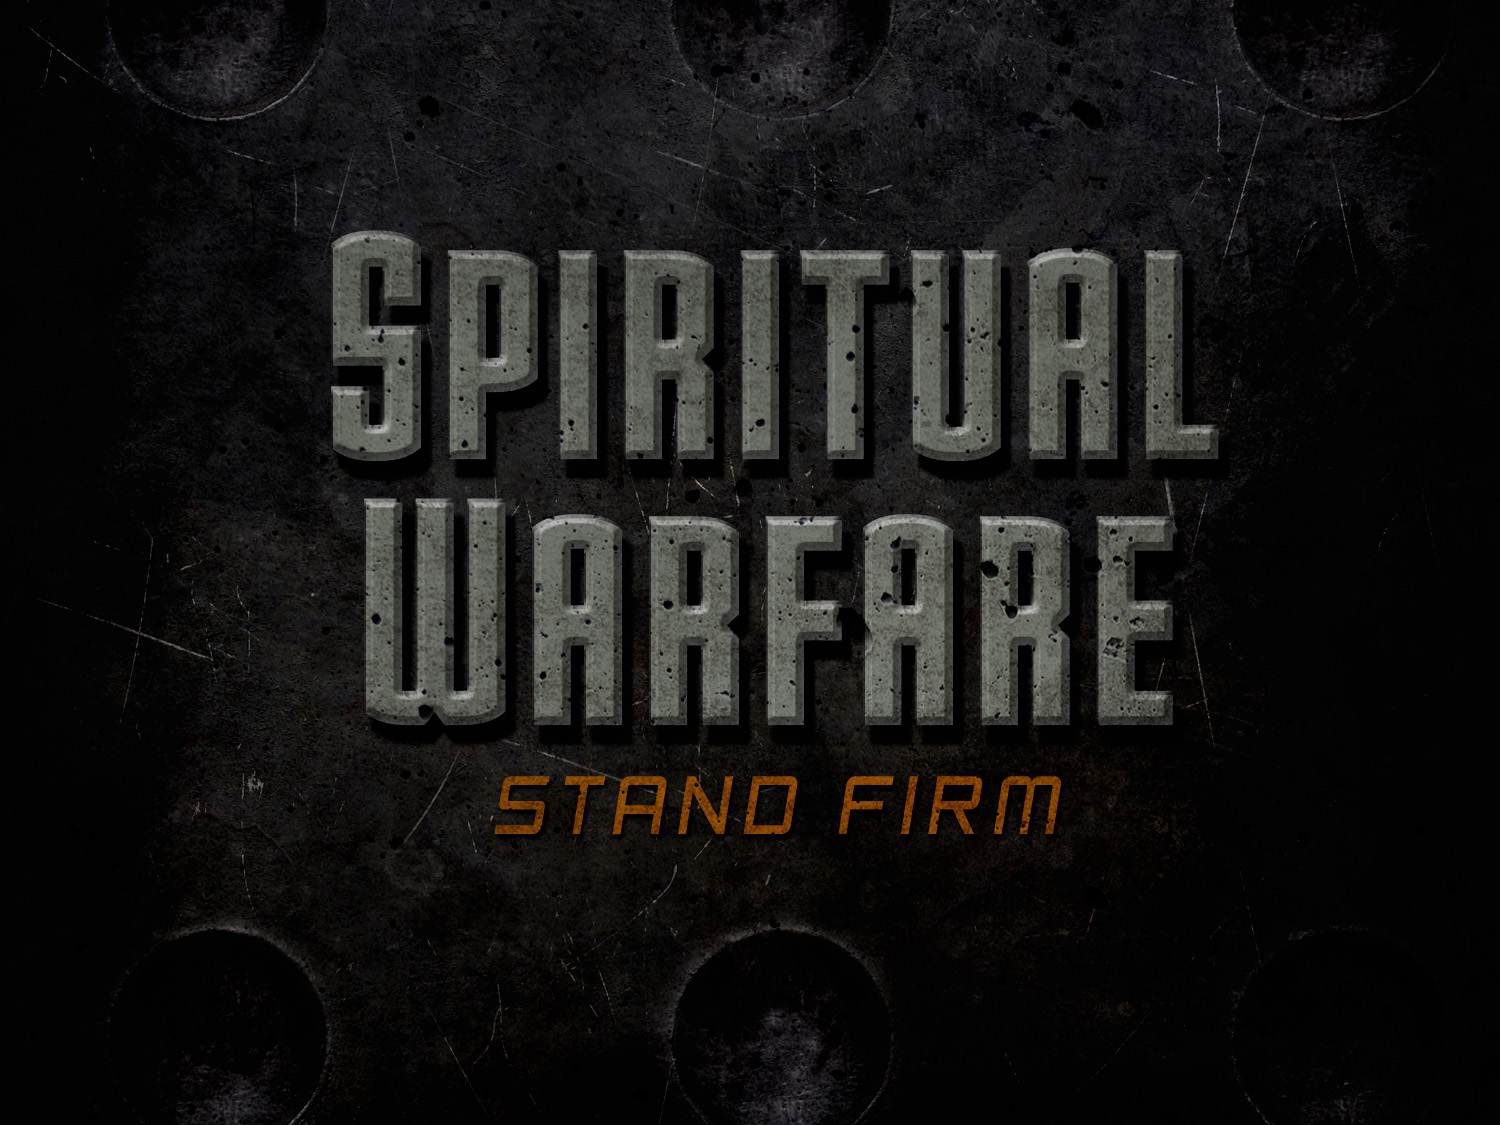 Spiritual Warfare - Fleeing Is Not An Option